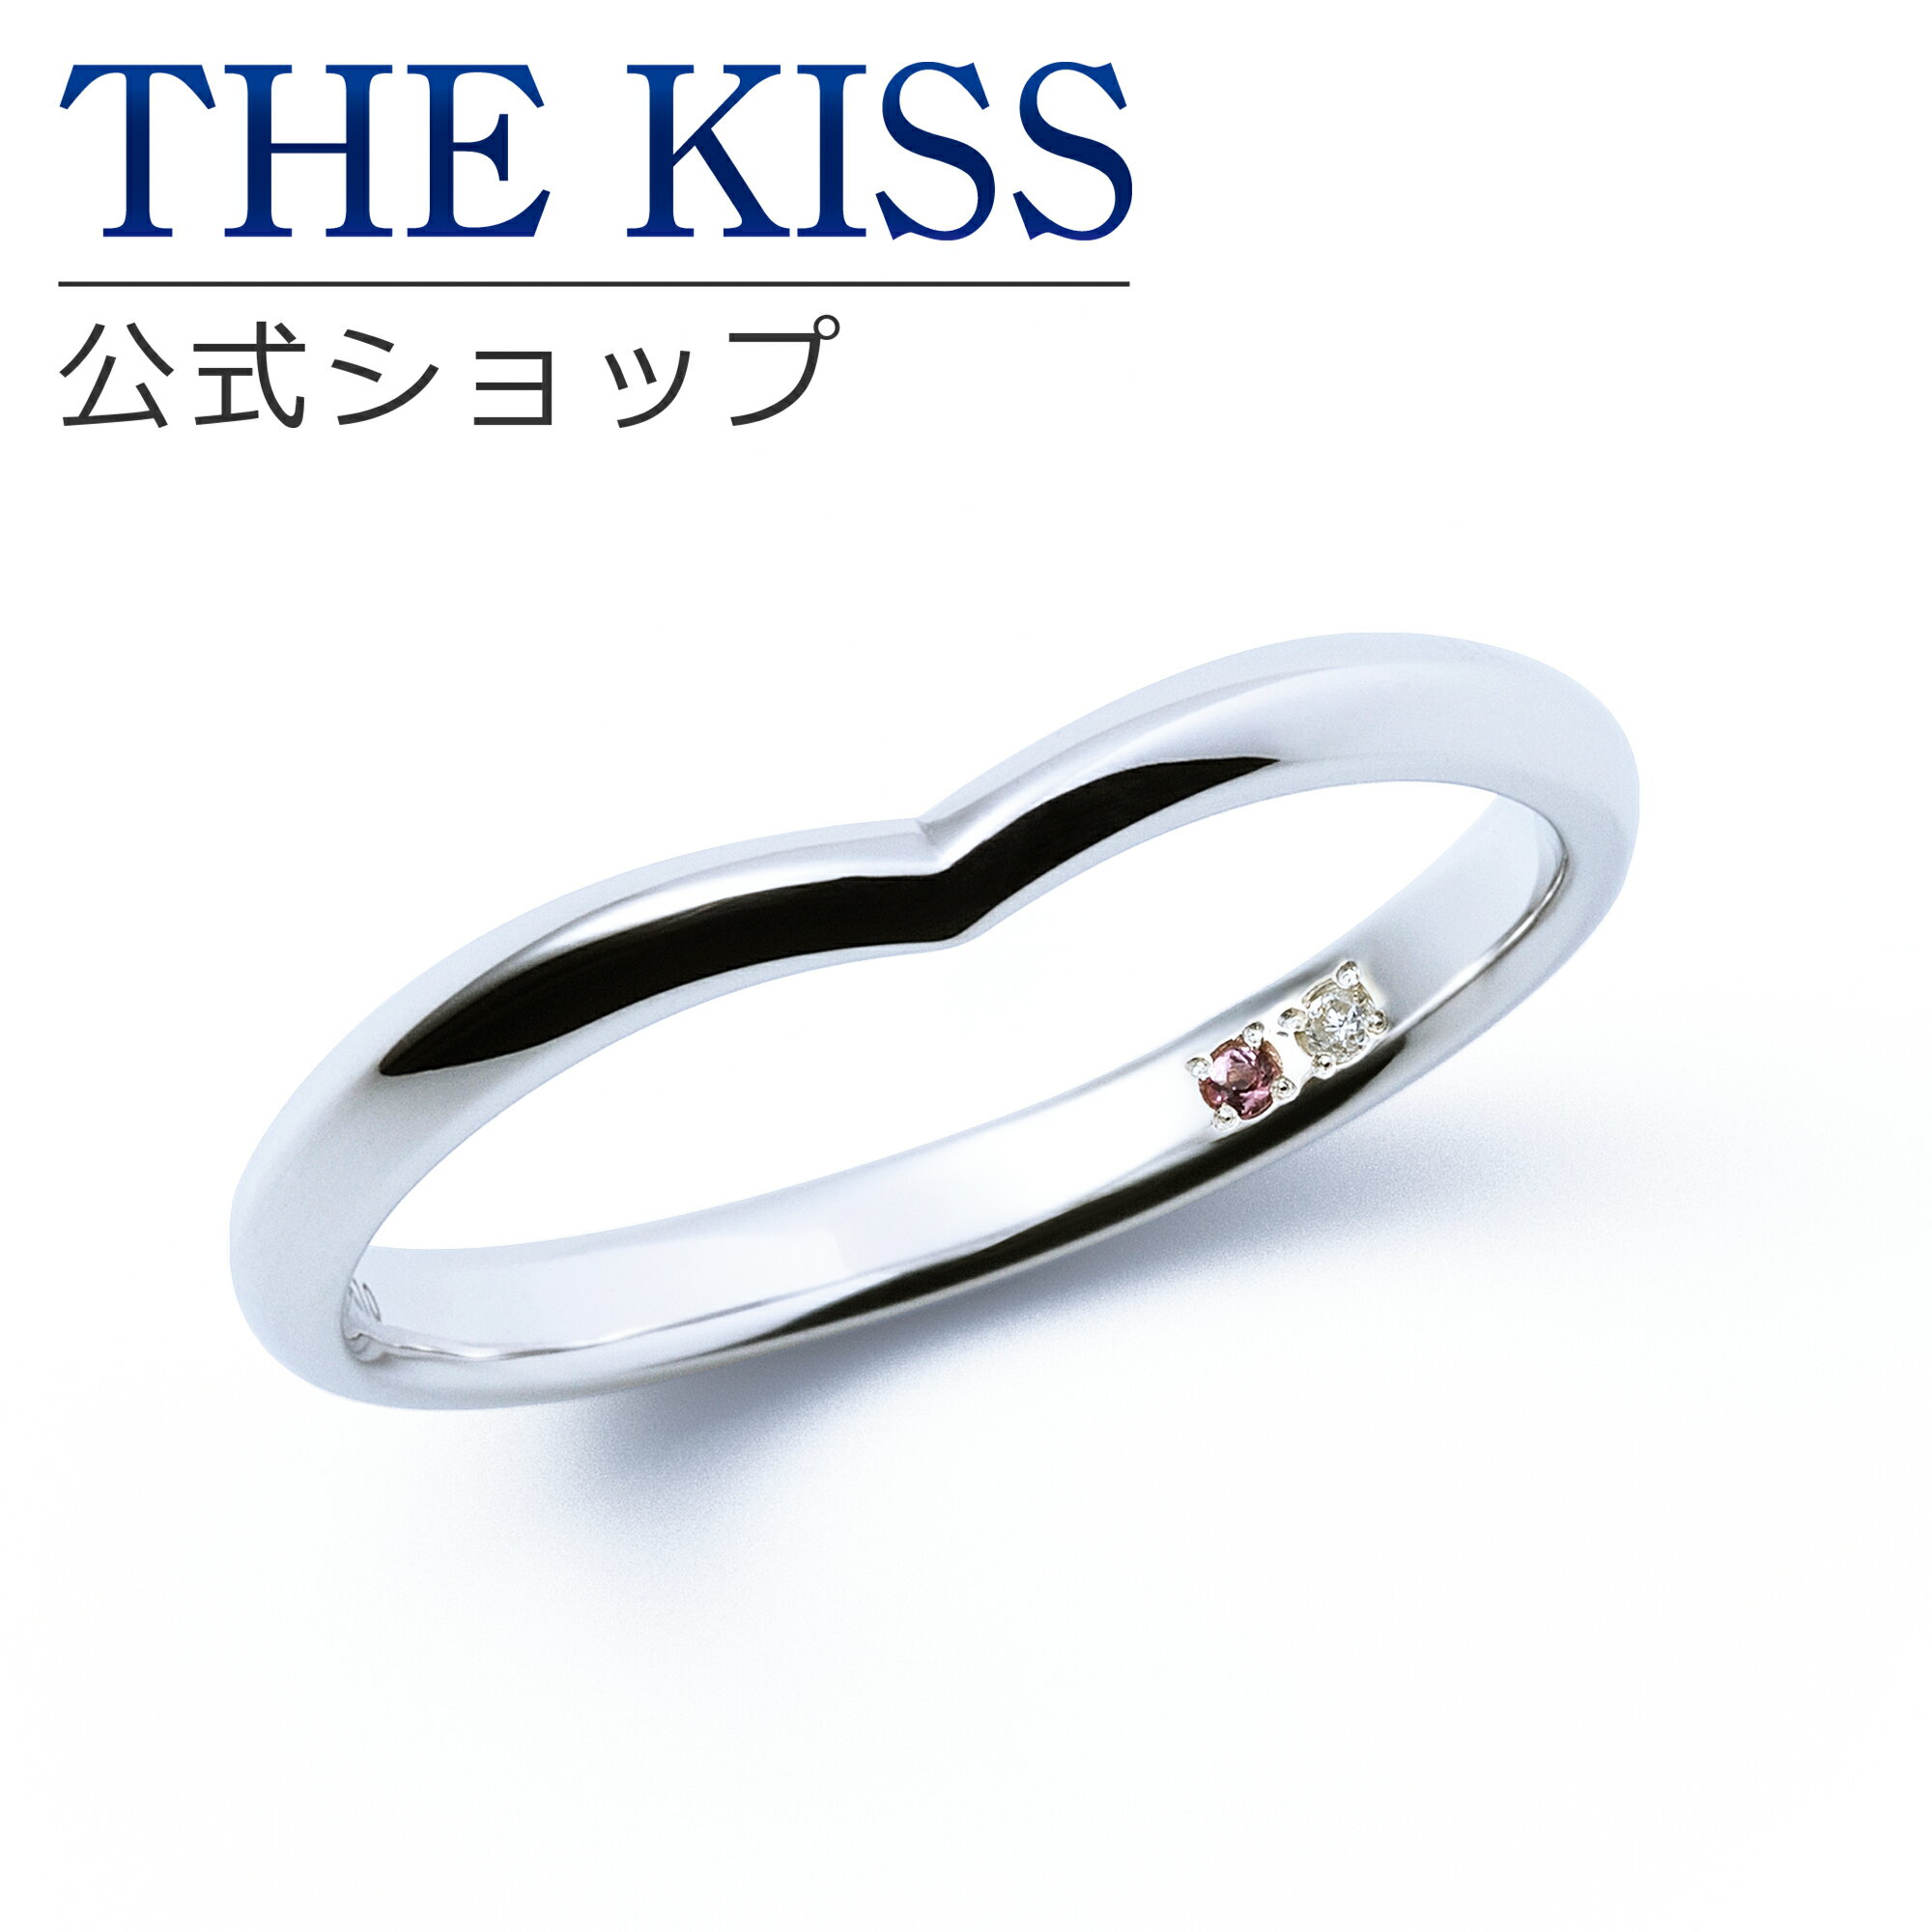 【ラッピング無料】【刻印無料】【THE KISS Anniversary】 THE KISS 公式ショップ K10 ホワイトゴールド マリッジ リング 結婚指輪 ペアリング メンズ 単品 wg カップル 人気 ジュエリーブランド THEKISS ザキッス 指輪 7621122002A 誕生石 シンプル 女性 ブライダル